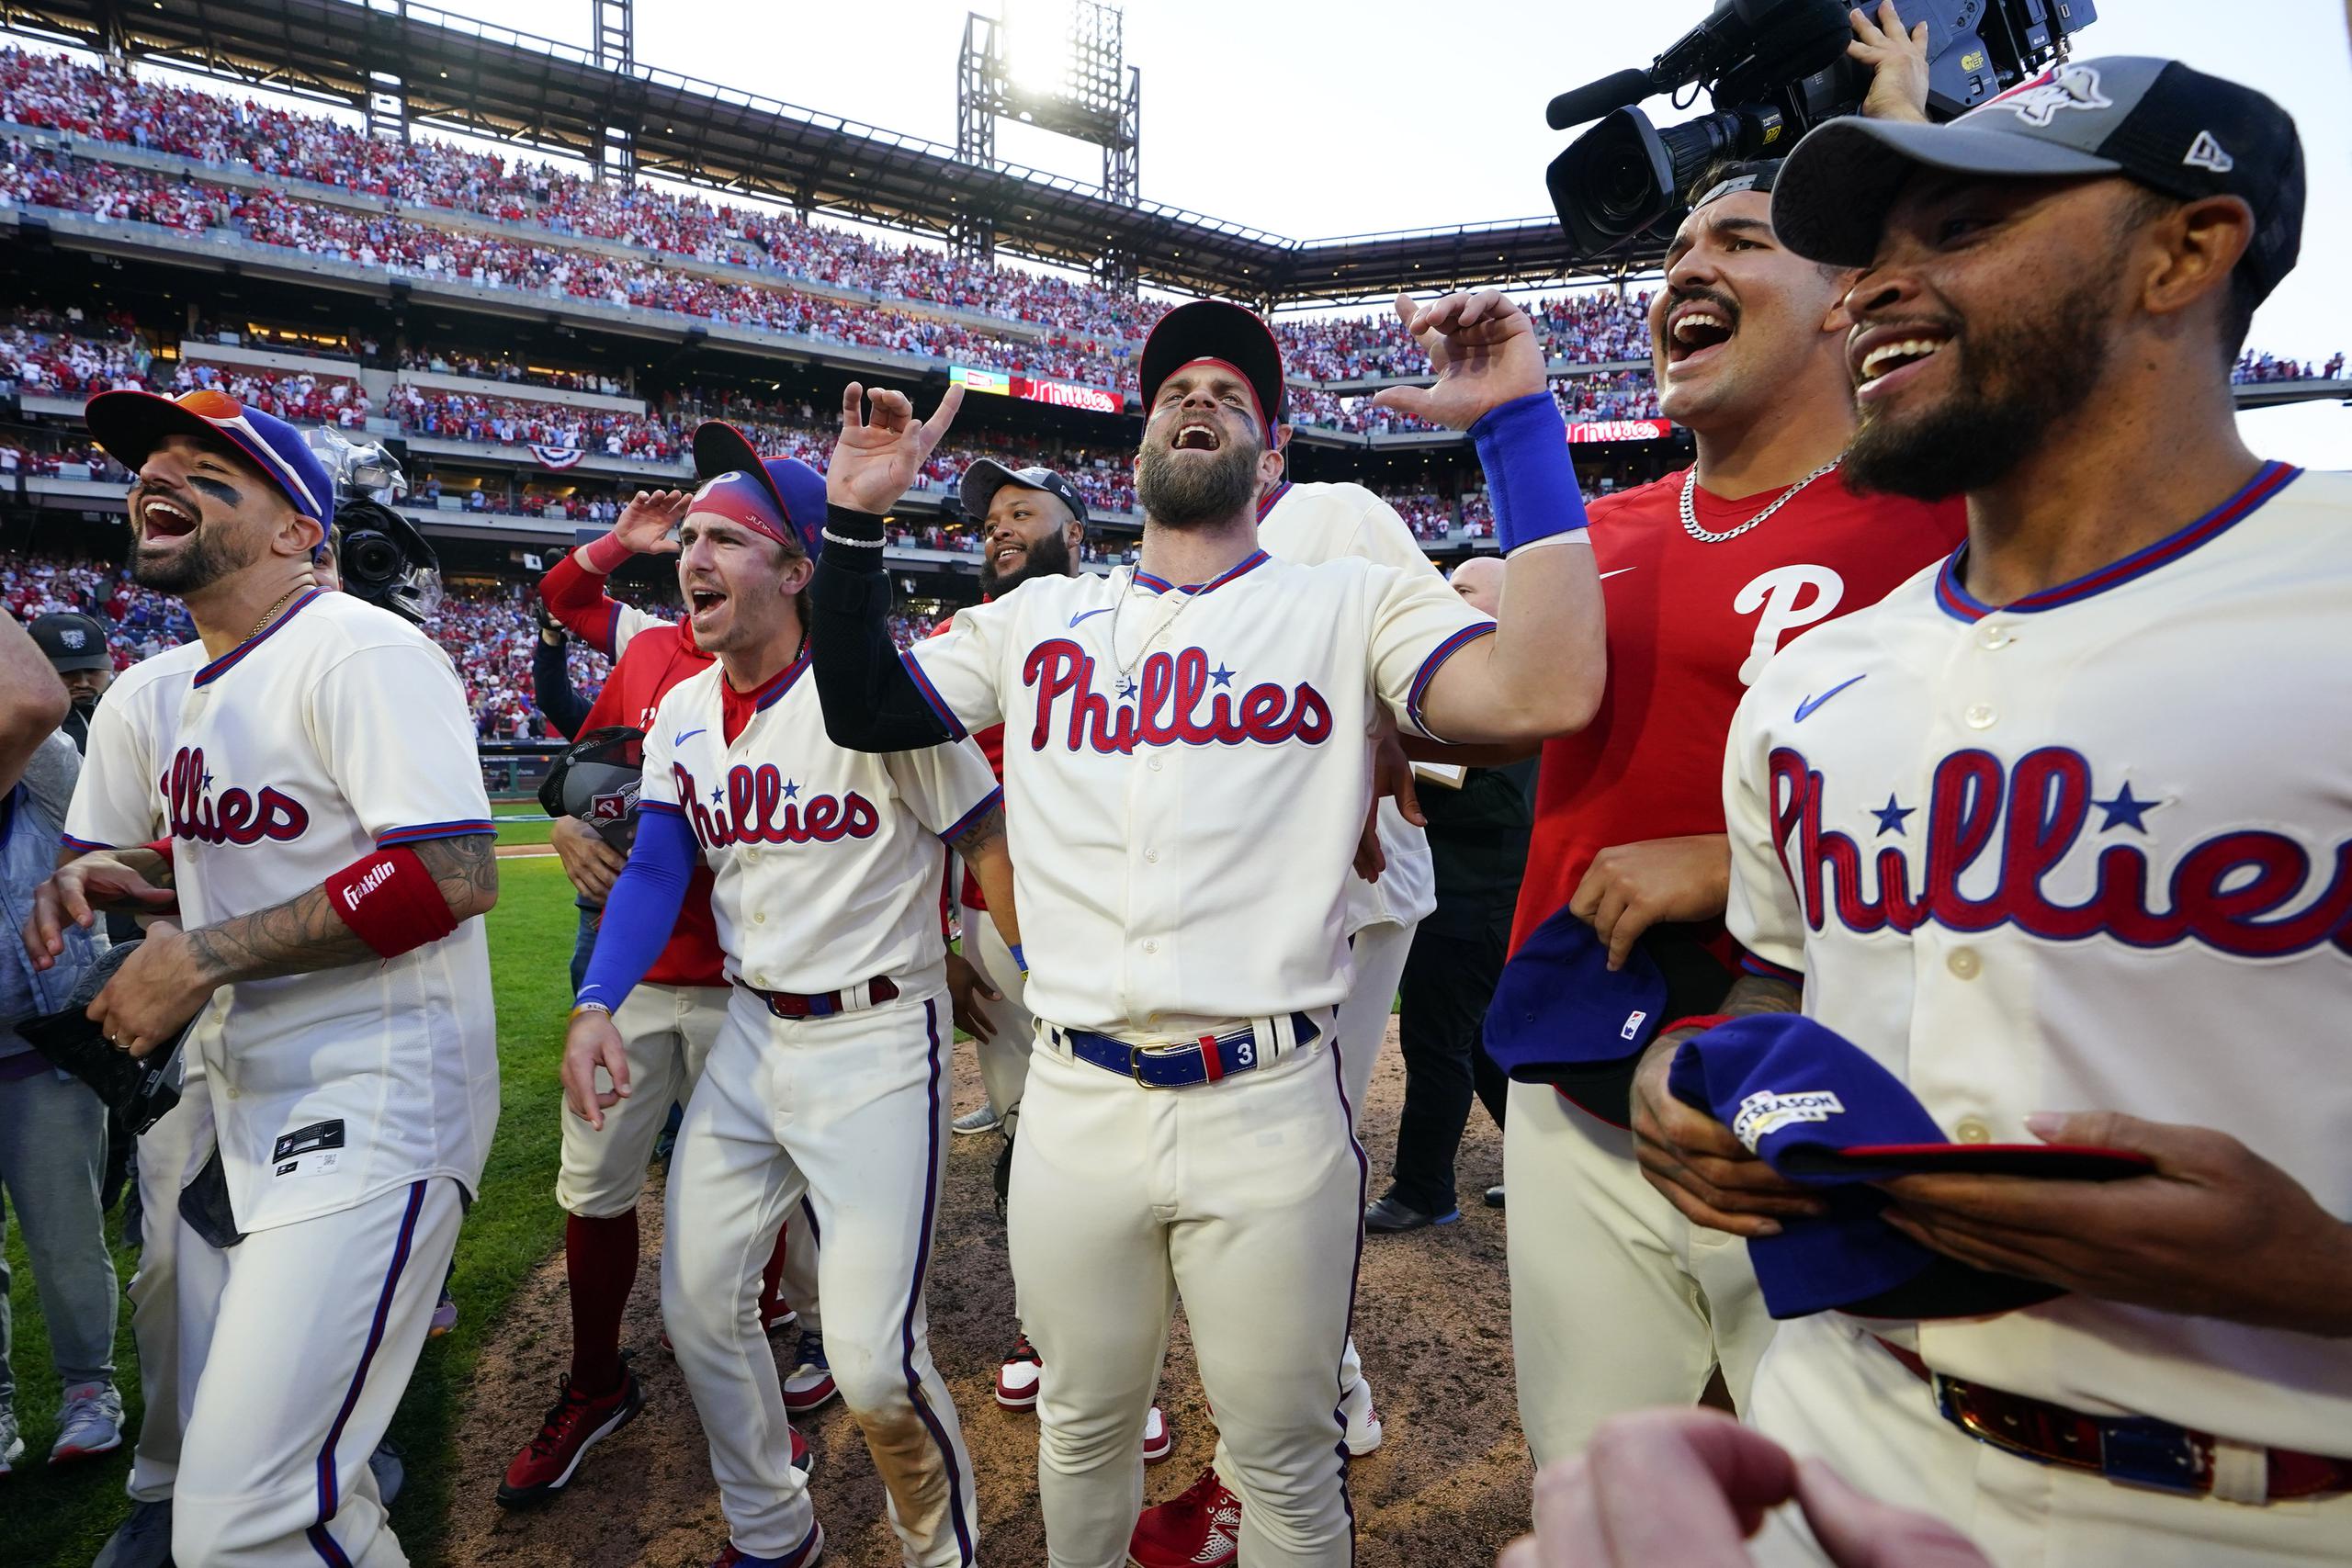 Bryce Harper, al centro, se disfruta la celebración de los Phillies de Filadelfia frente a sus fanáticos luego de que eliminaran el sábado a los Braves de Atlanta para adelantar a la Serie de Campeonato de la Liga Nacional.